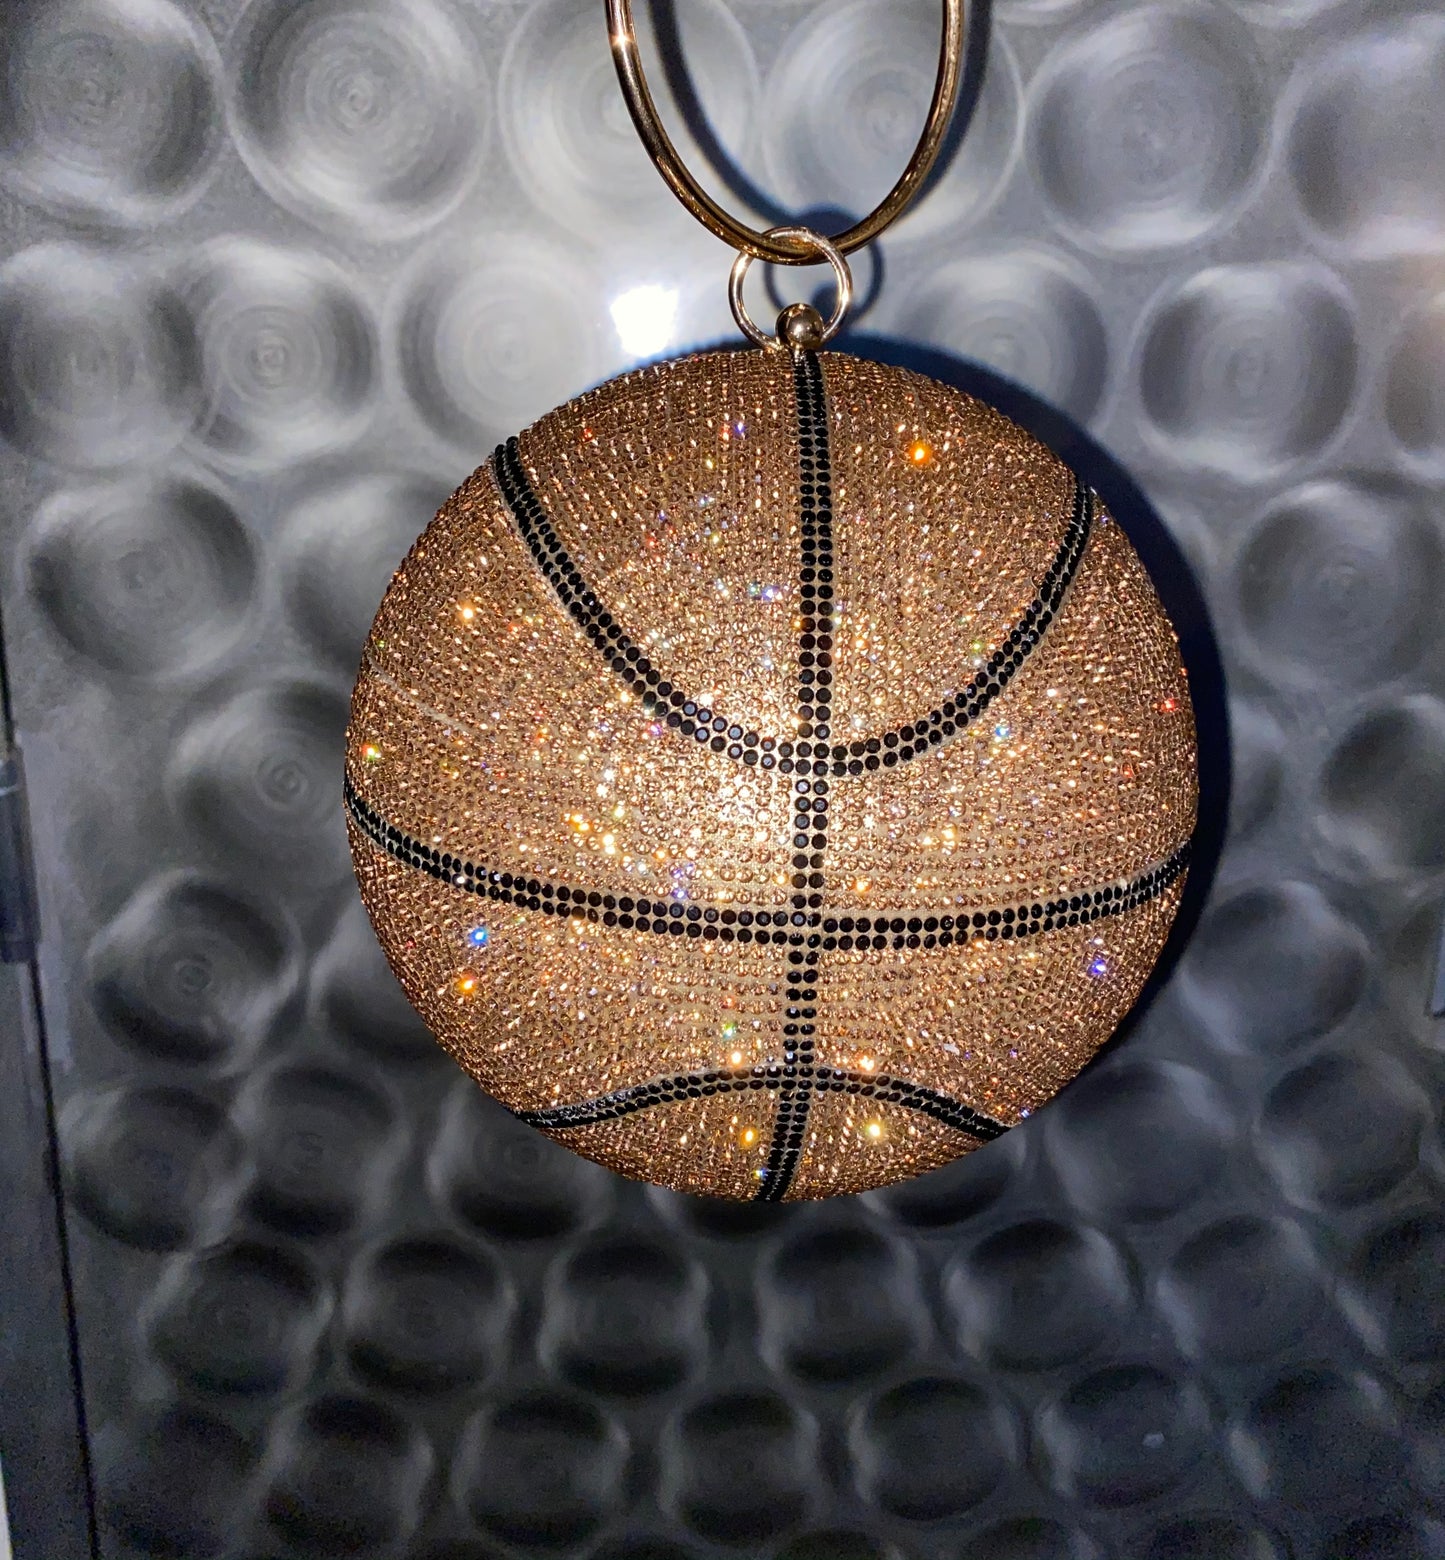 Kristall-Basketball-Handtasche